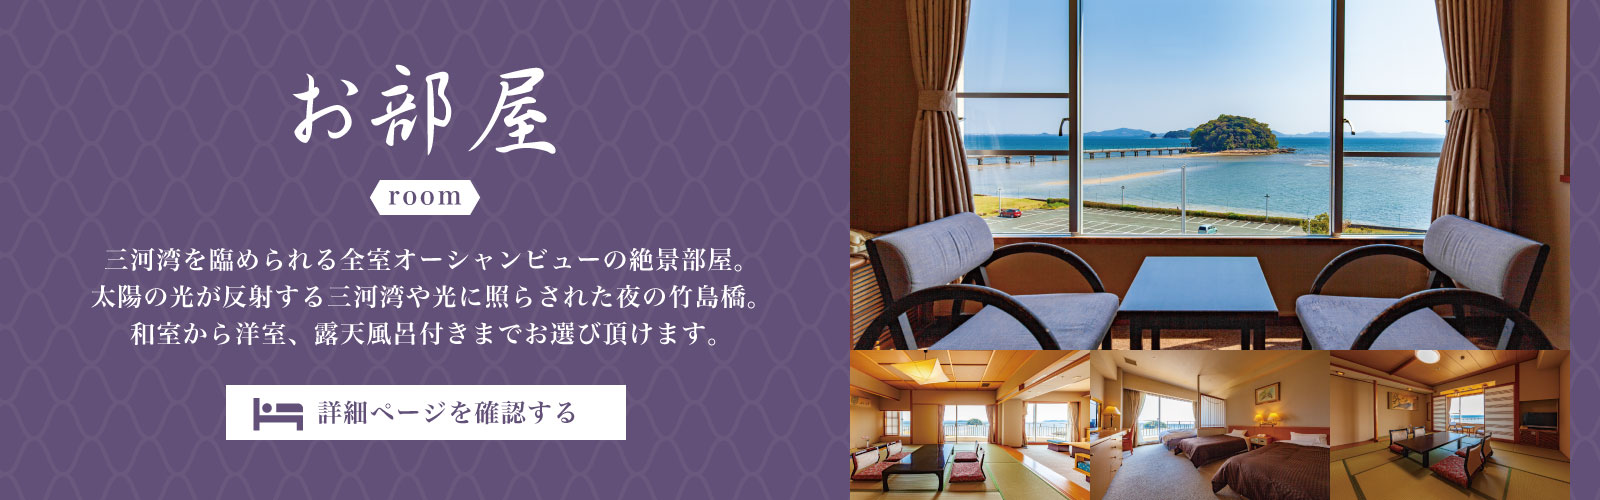 ホテル竹島の部屋